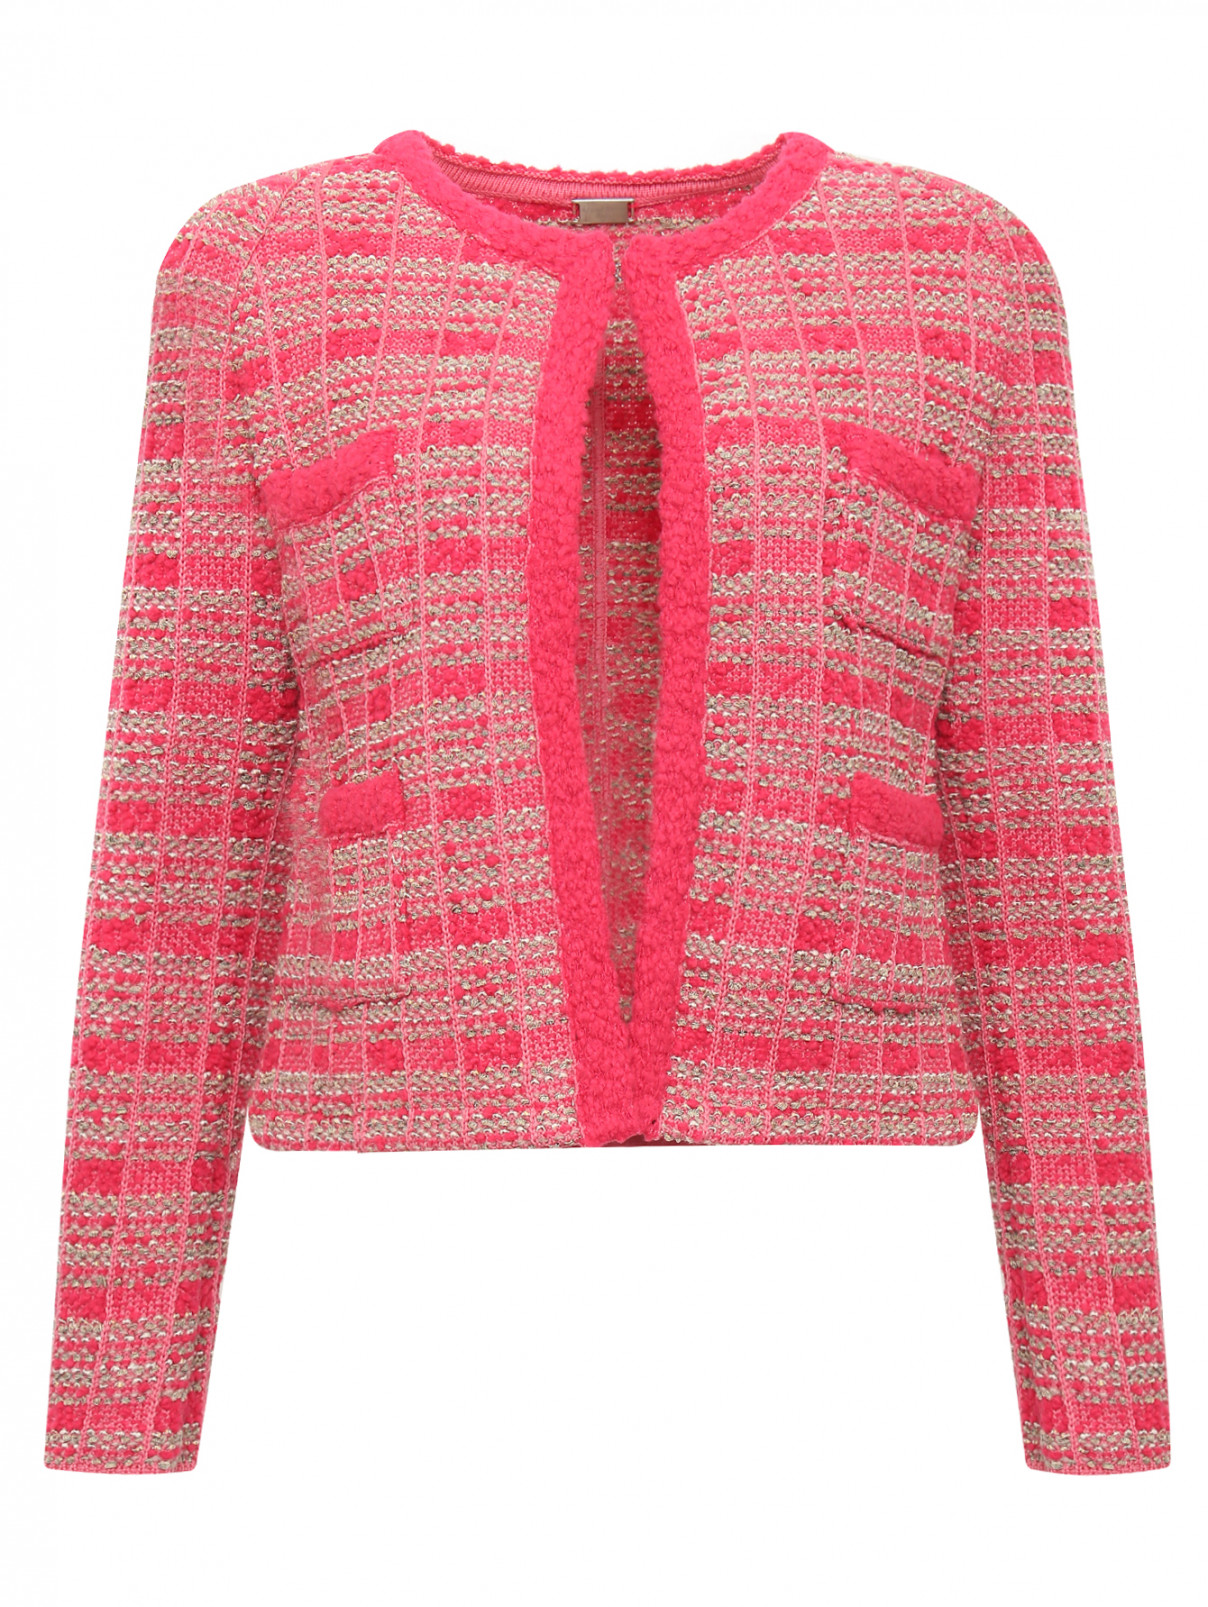 Жакет из смешанной шерсти с накладными карманами Lil pour l'Autre  –  Общий вид  – Цвет:  Розовый